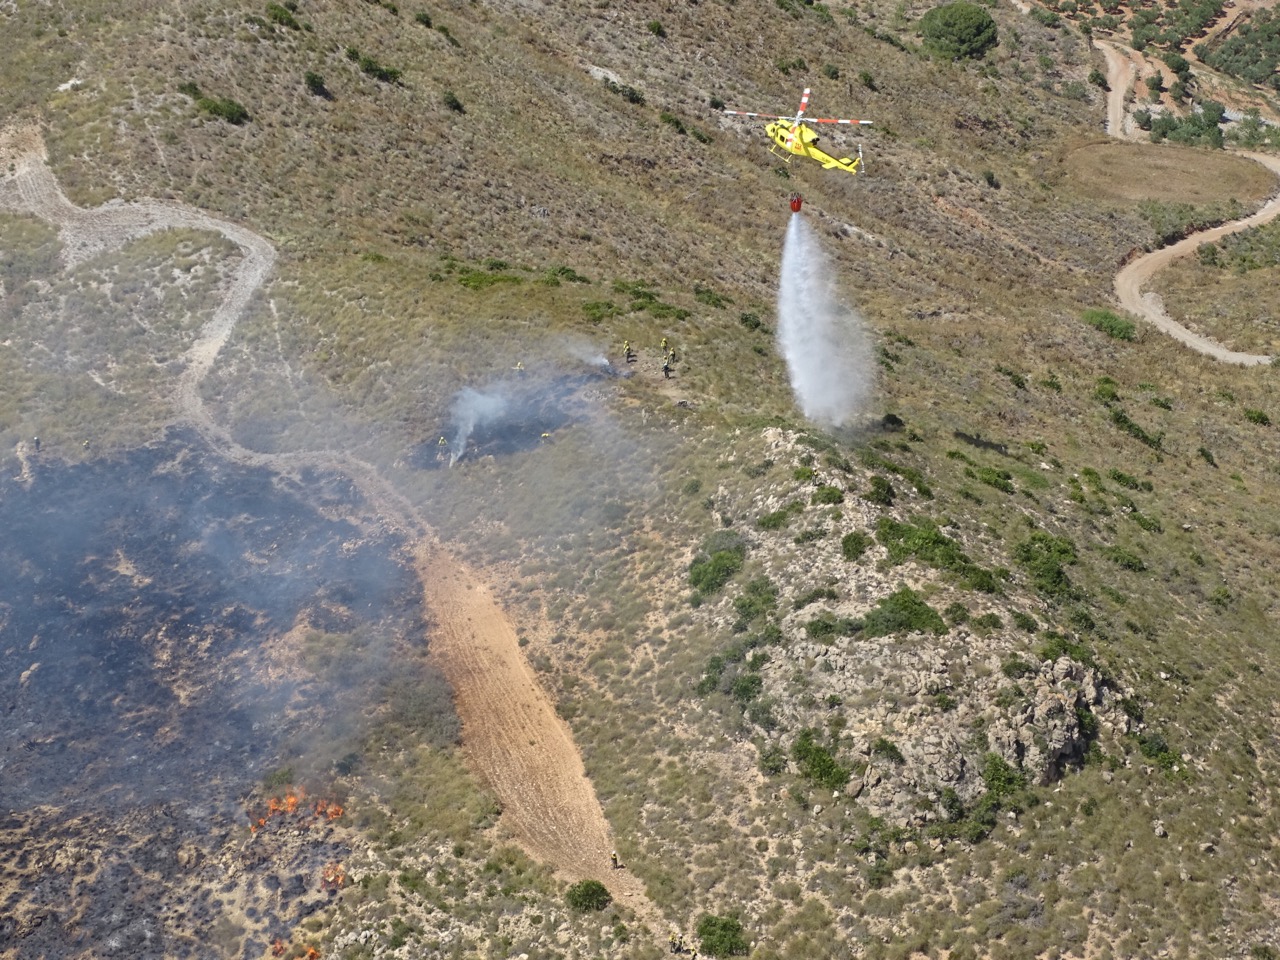 Imágenes facilitadas por la Dirección General del Medio Natural y tomadas desde helicóptero de la DGSCE